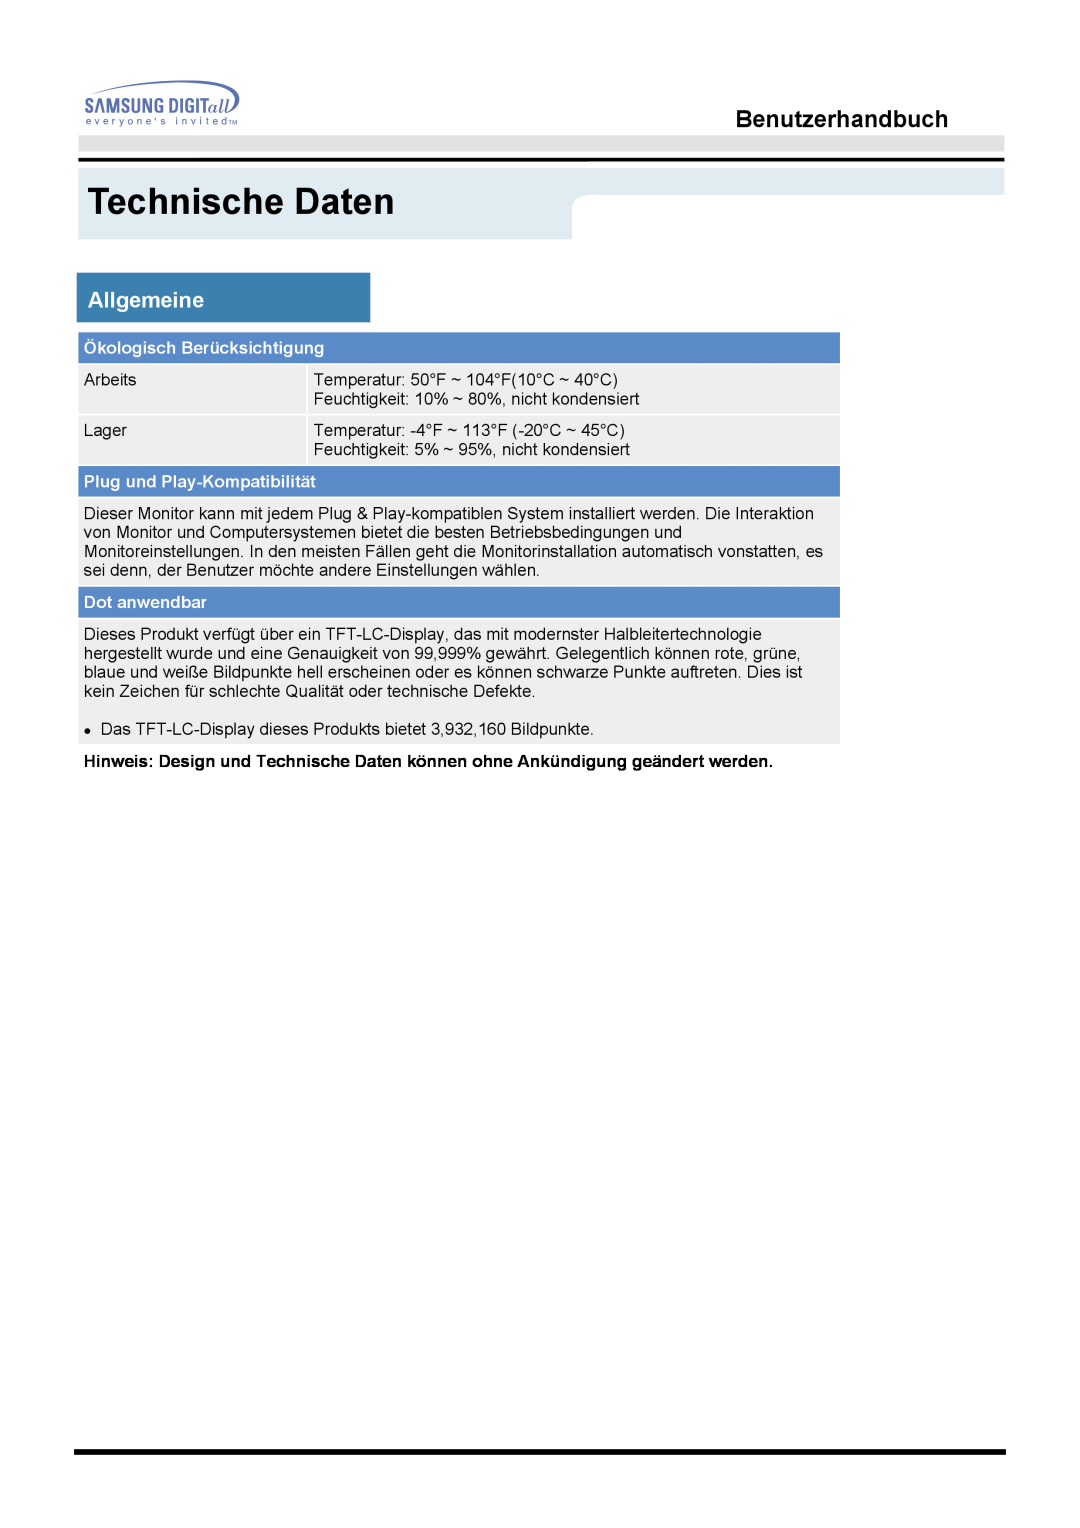 Samsung MO17ESZSZ/EDC manual Technische Daten, Benutzerhandbuch, Allgemeine, Ökologisch Berücksichtigung, Dot anwendbar 